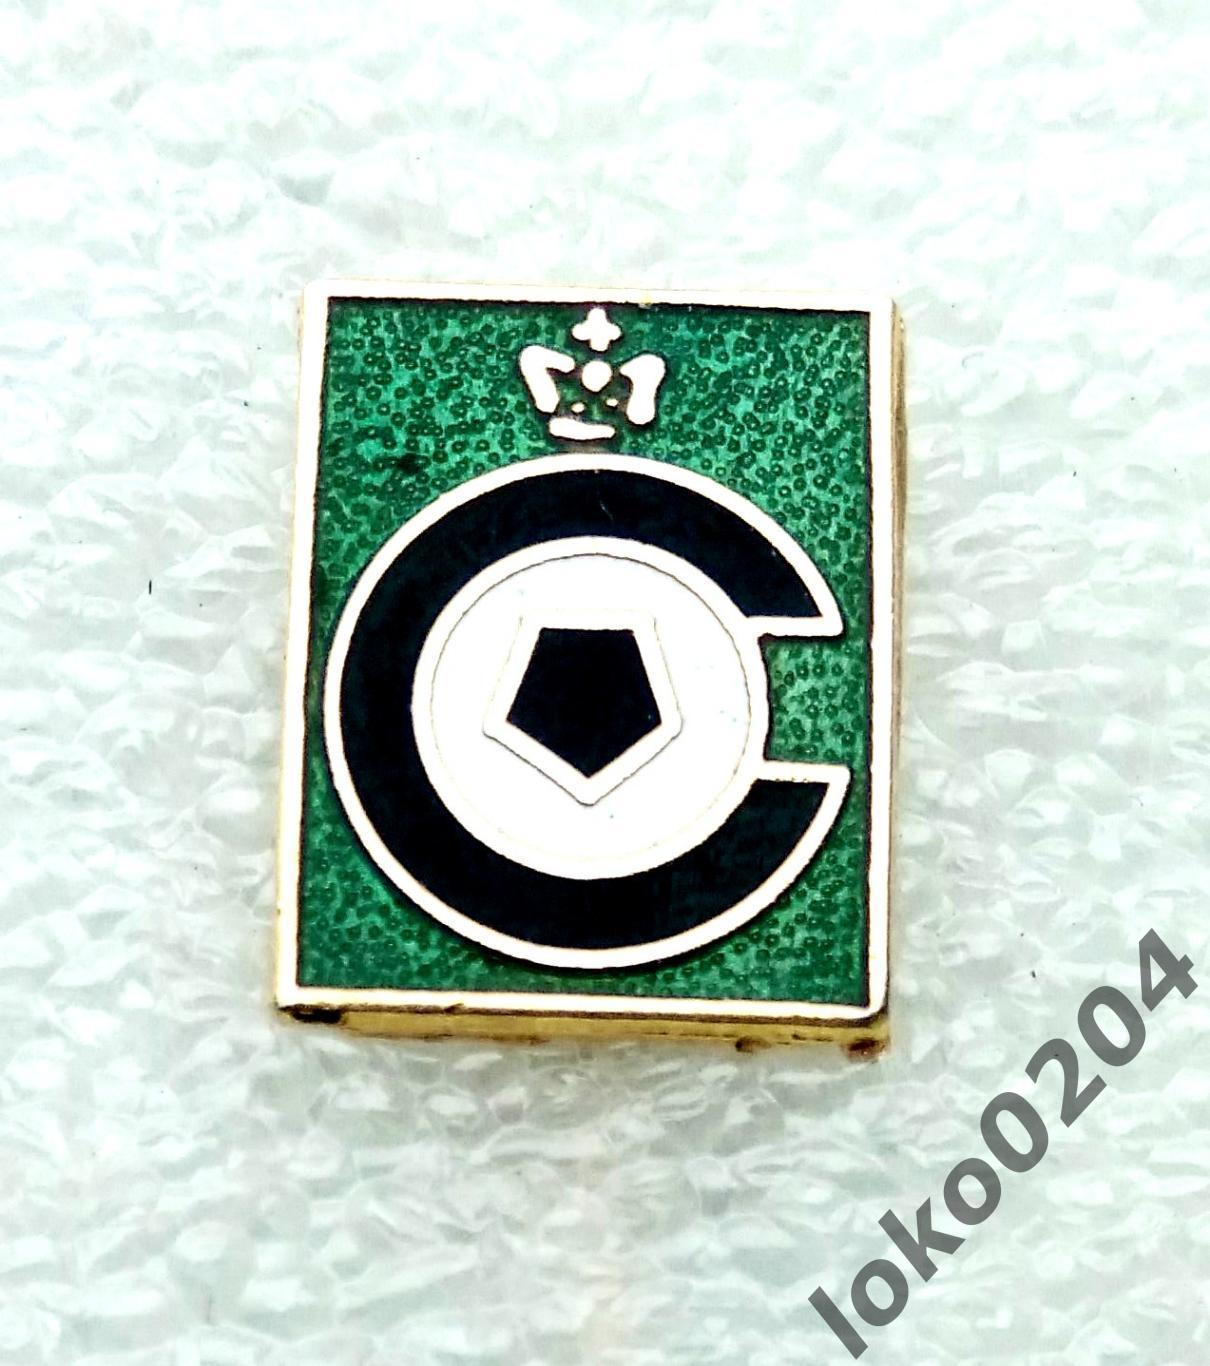 Серкль Брюгге ФК - Cercle Brugge K.S.V. - БЕЛЬГИЯ (80-е гг).